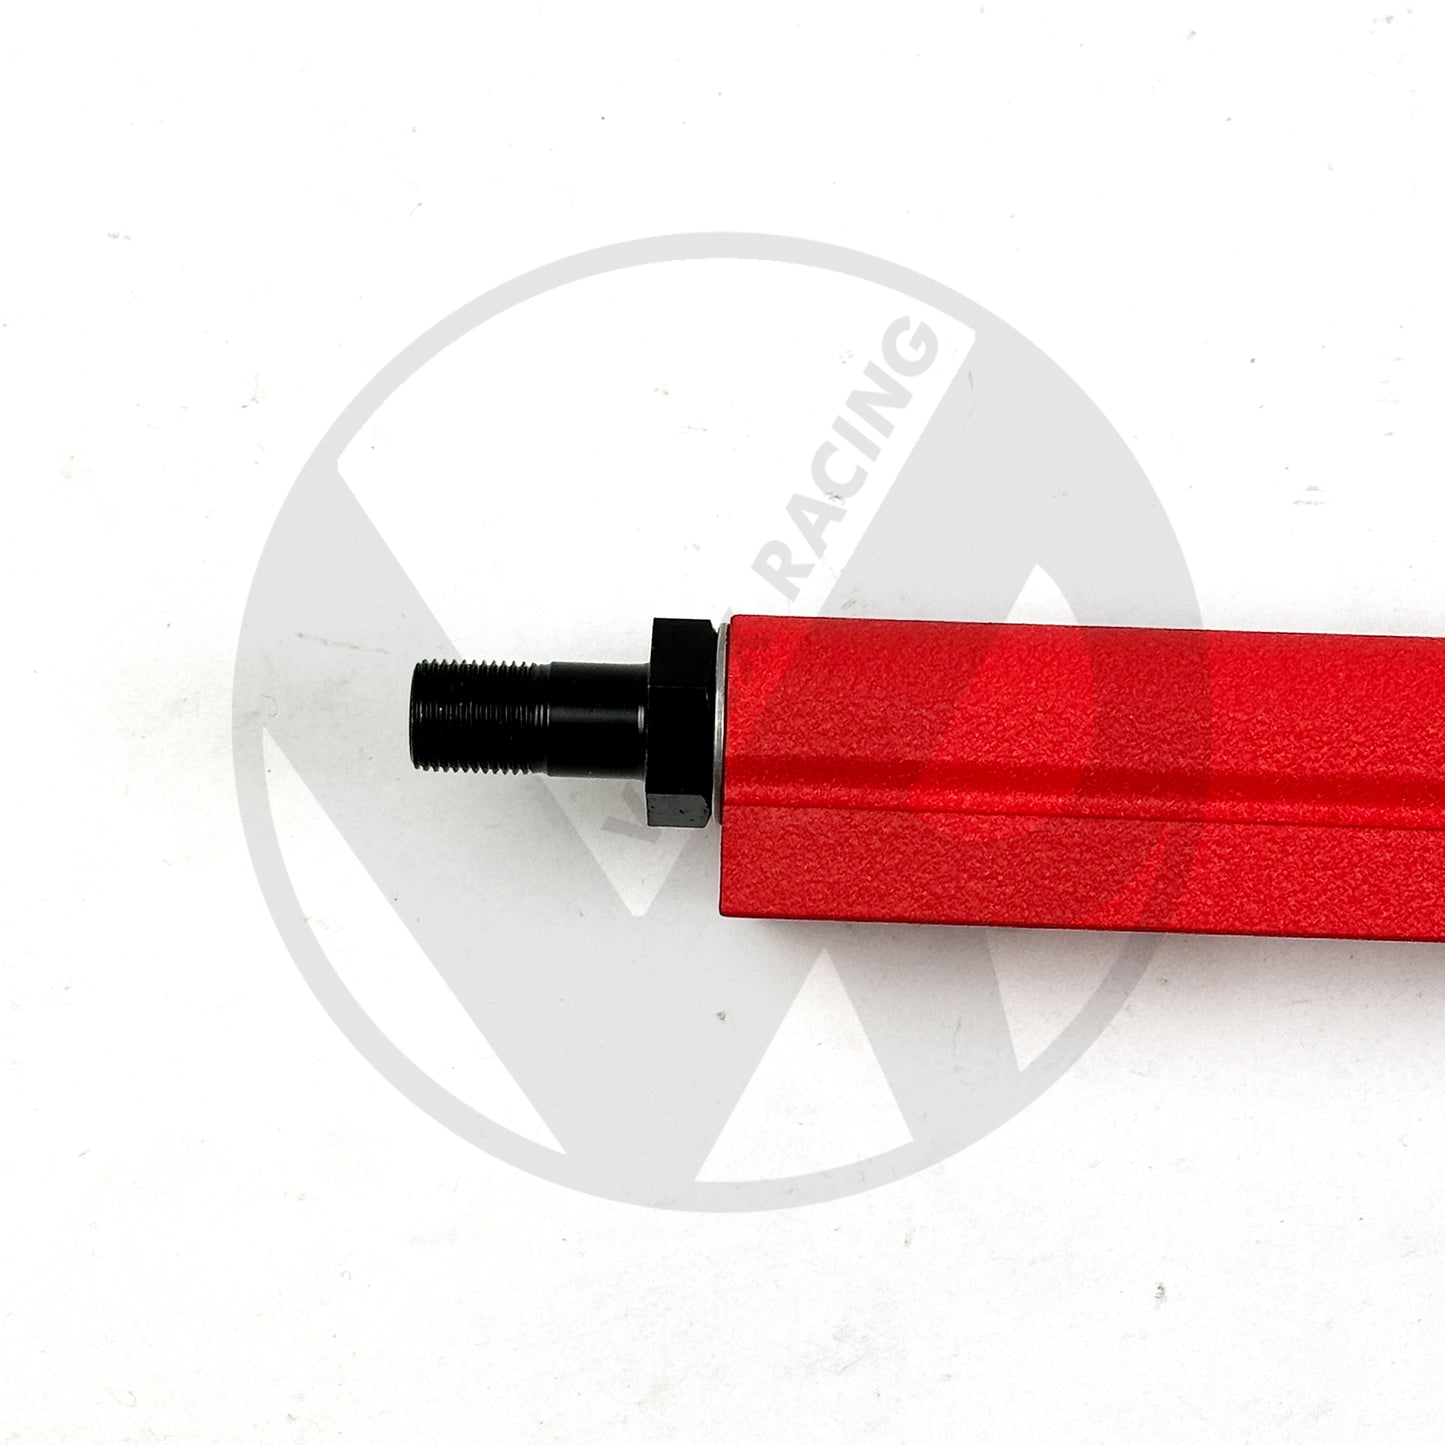 B Series Valex Fuel Rail & Regulator / Marshall Gauge for Honda Acura B16 B18 B20 (Wrinkle Red)